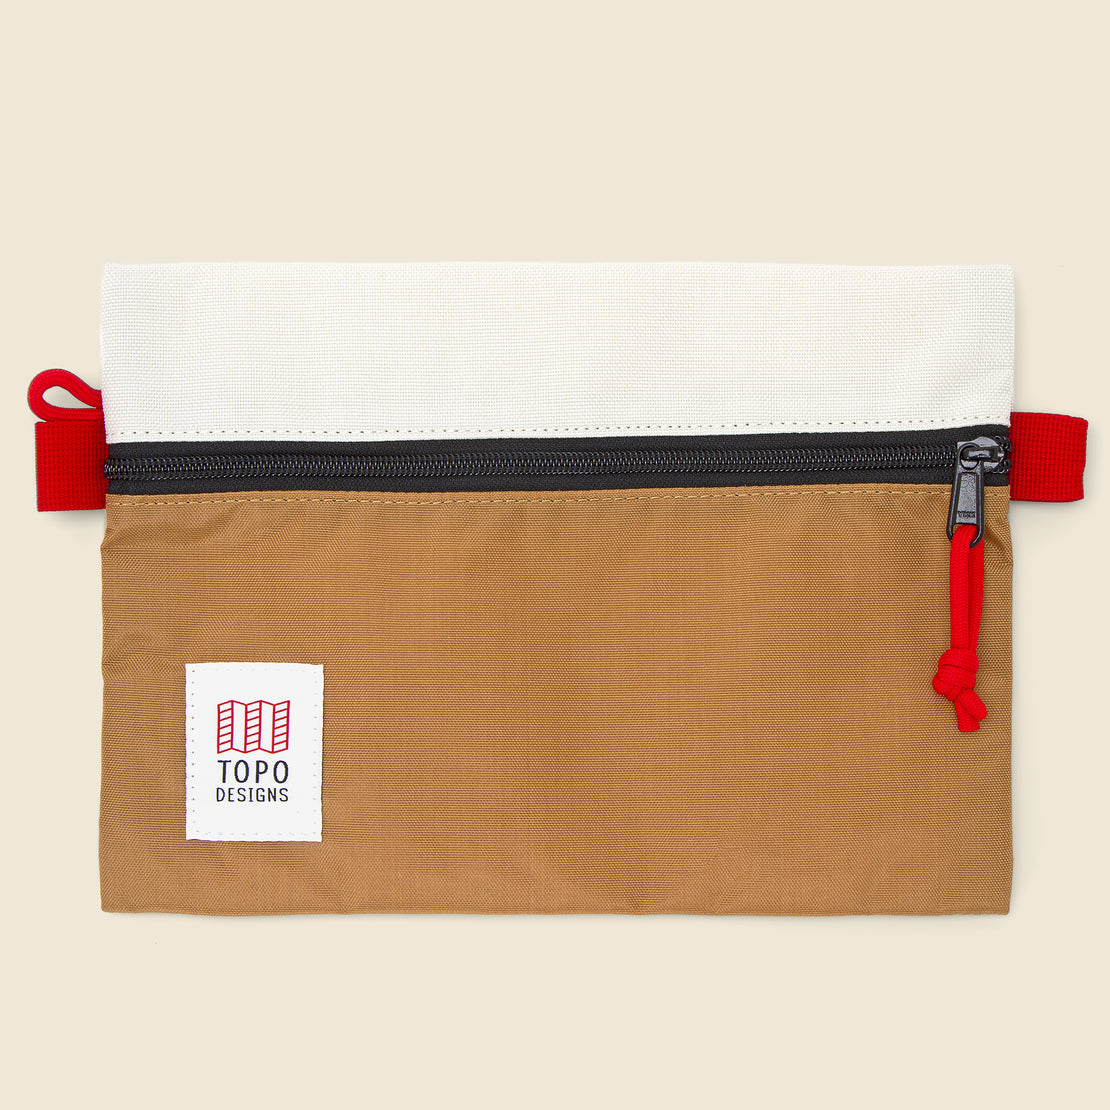 Topo Designs Medium Accessory Bag - Bone White/Khaki